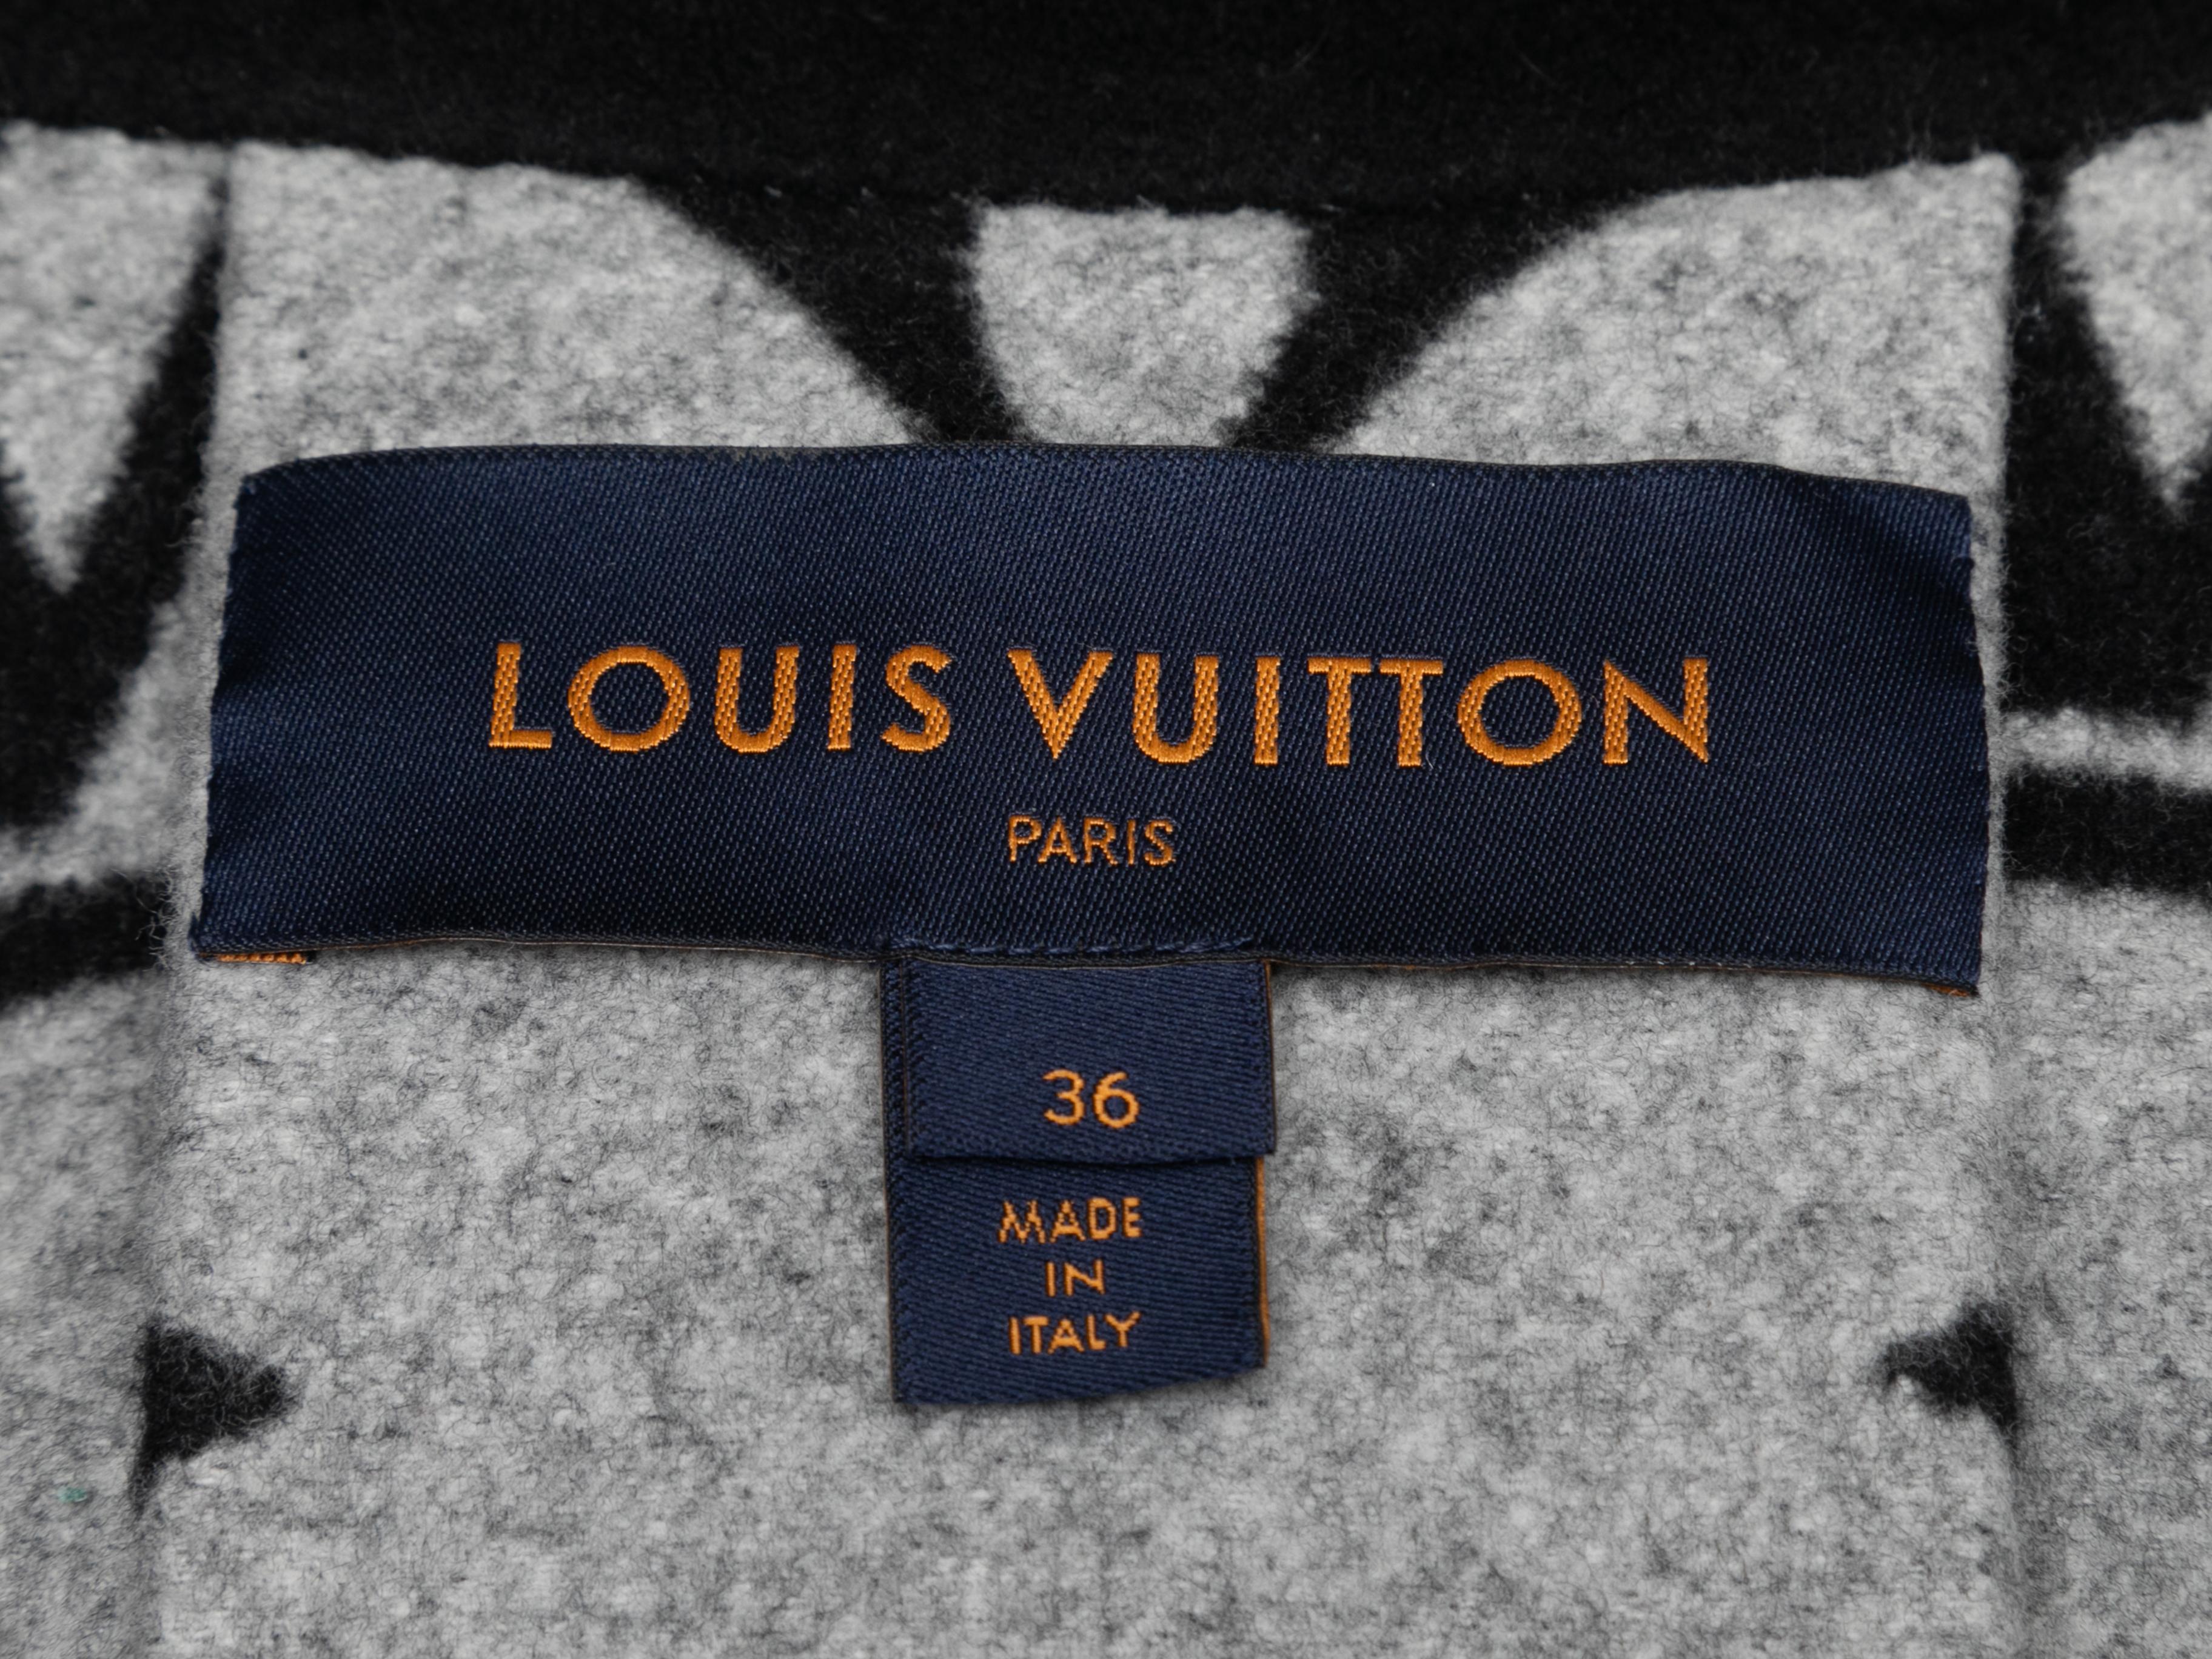 Schwarzer Wollumhang von Louis Vuitton. Logo beschichtetes Segeltuch am Halsausschnitt. Verschluss vorne. 36